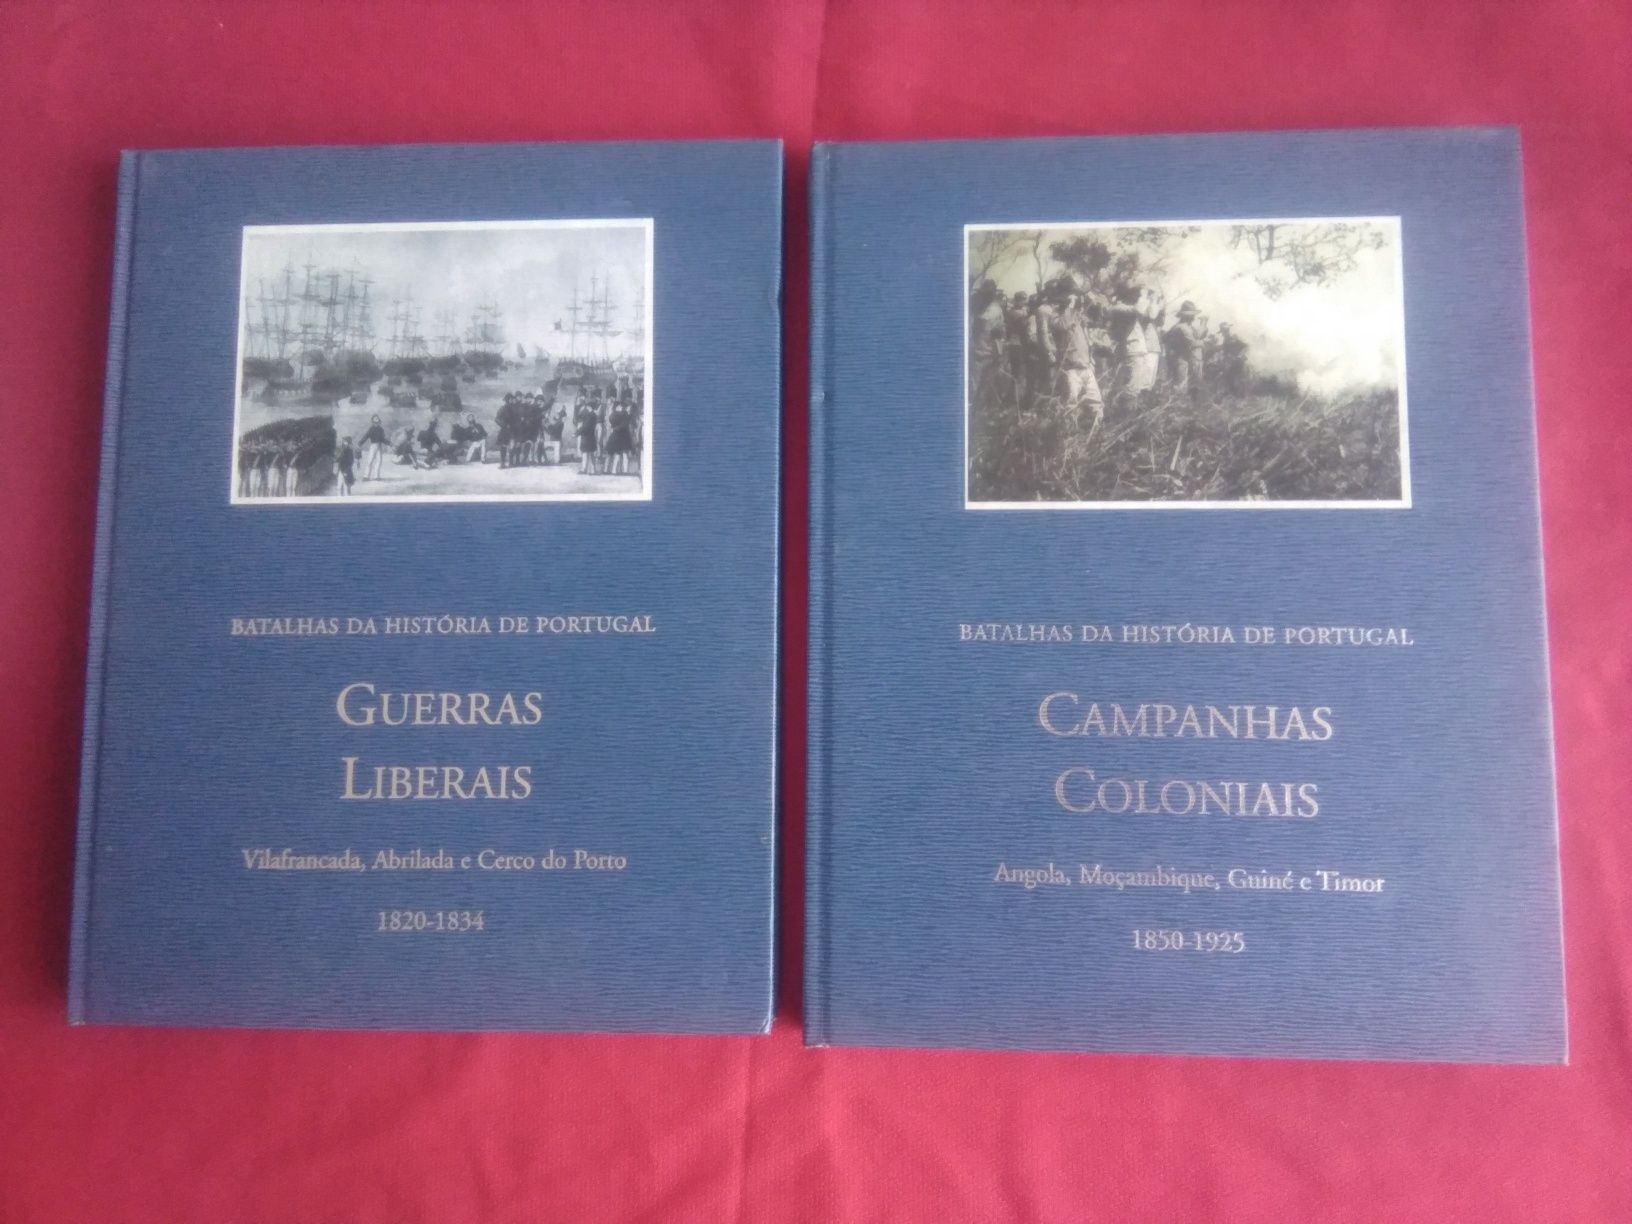 Lote 16 volumes Batalhas da História de Portugal. Quidnovo. 2006.